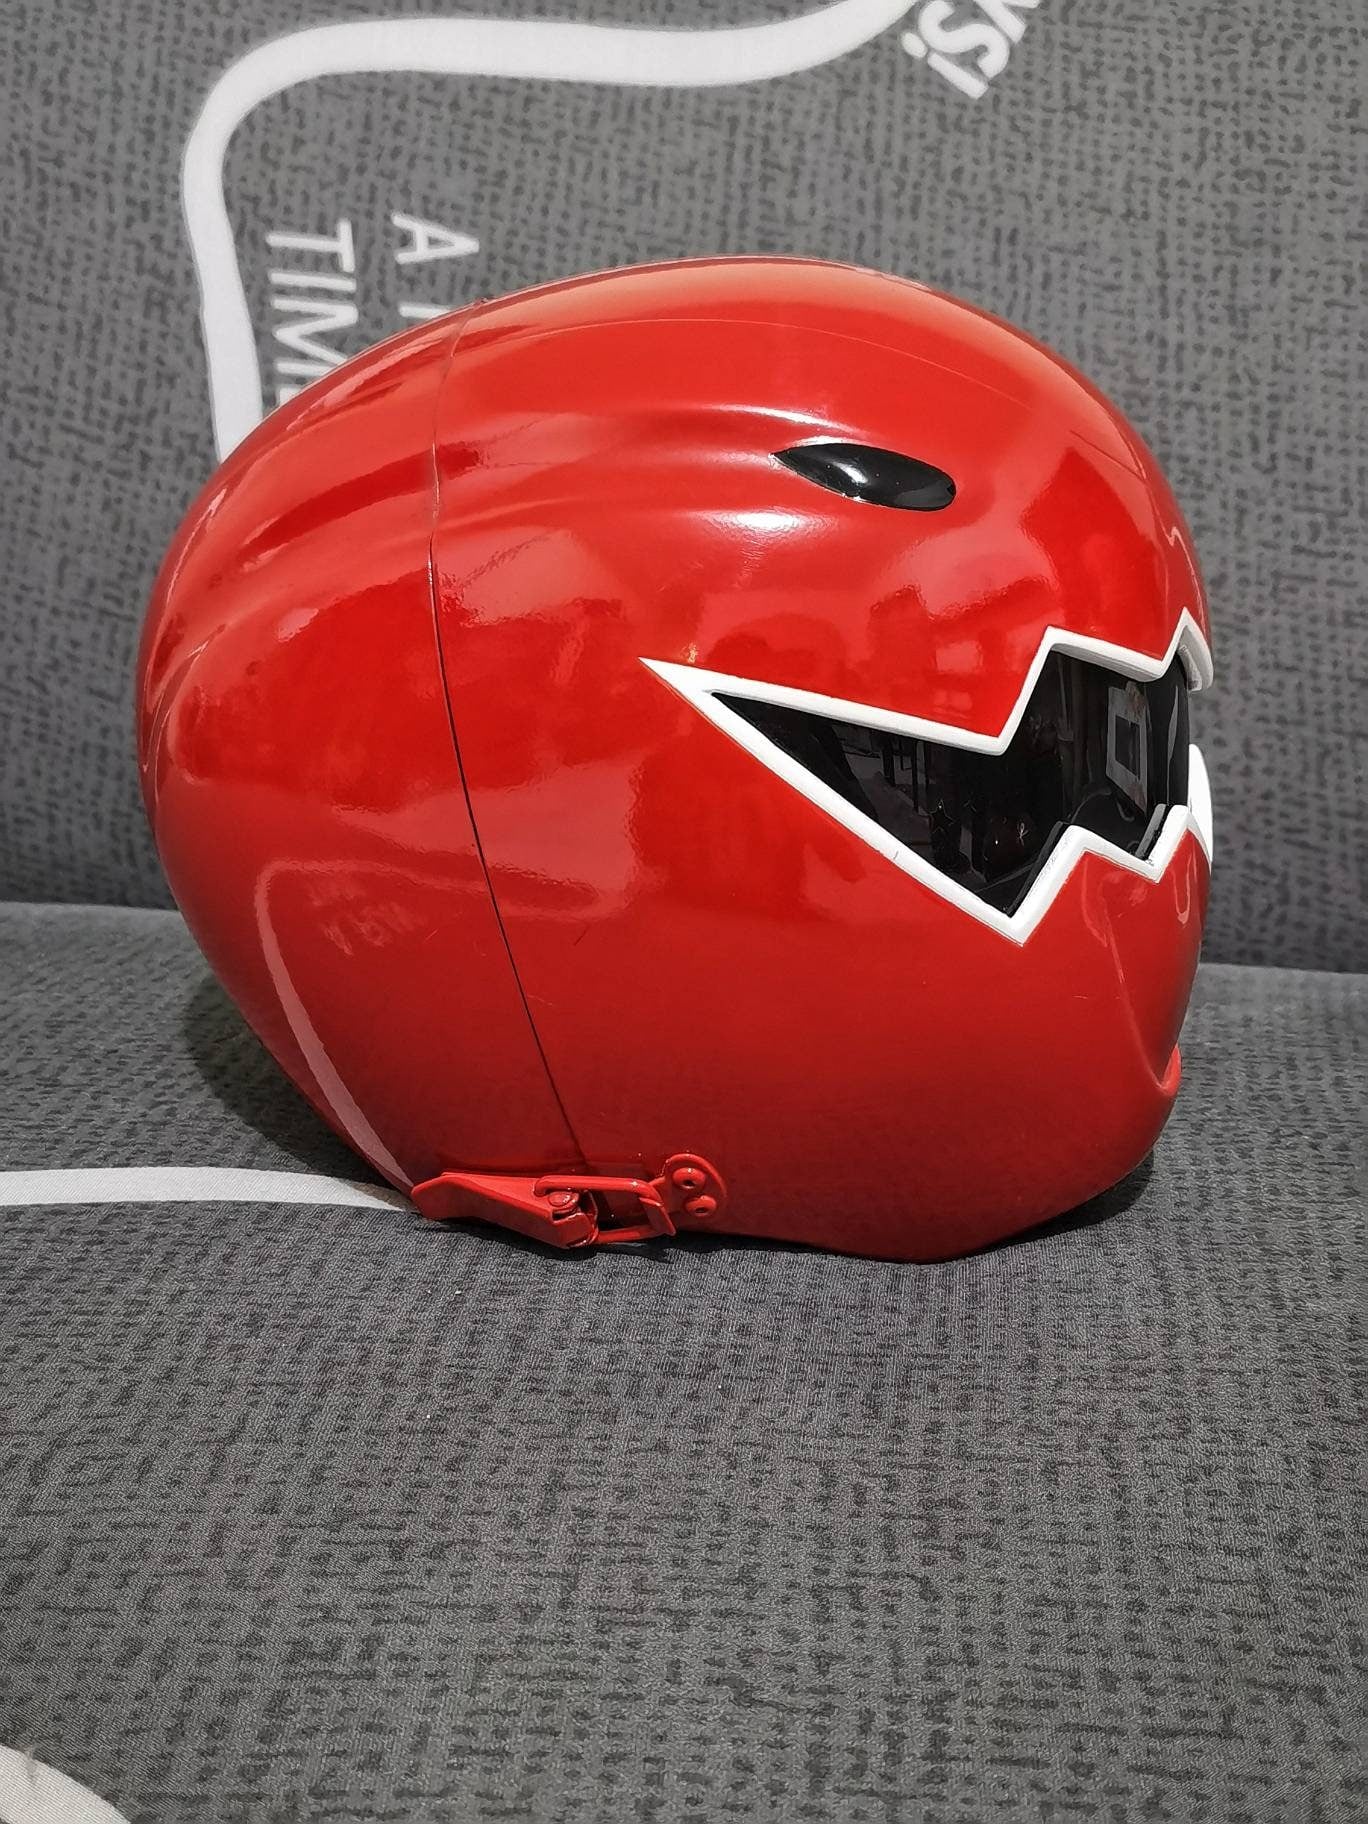 Power rangers Dino thunder red helmet